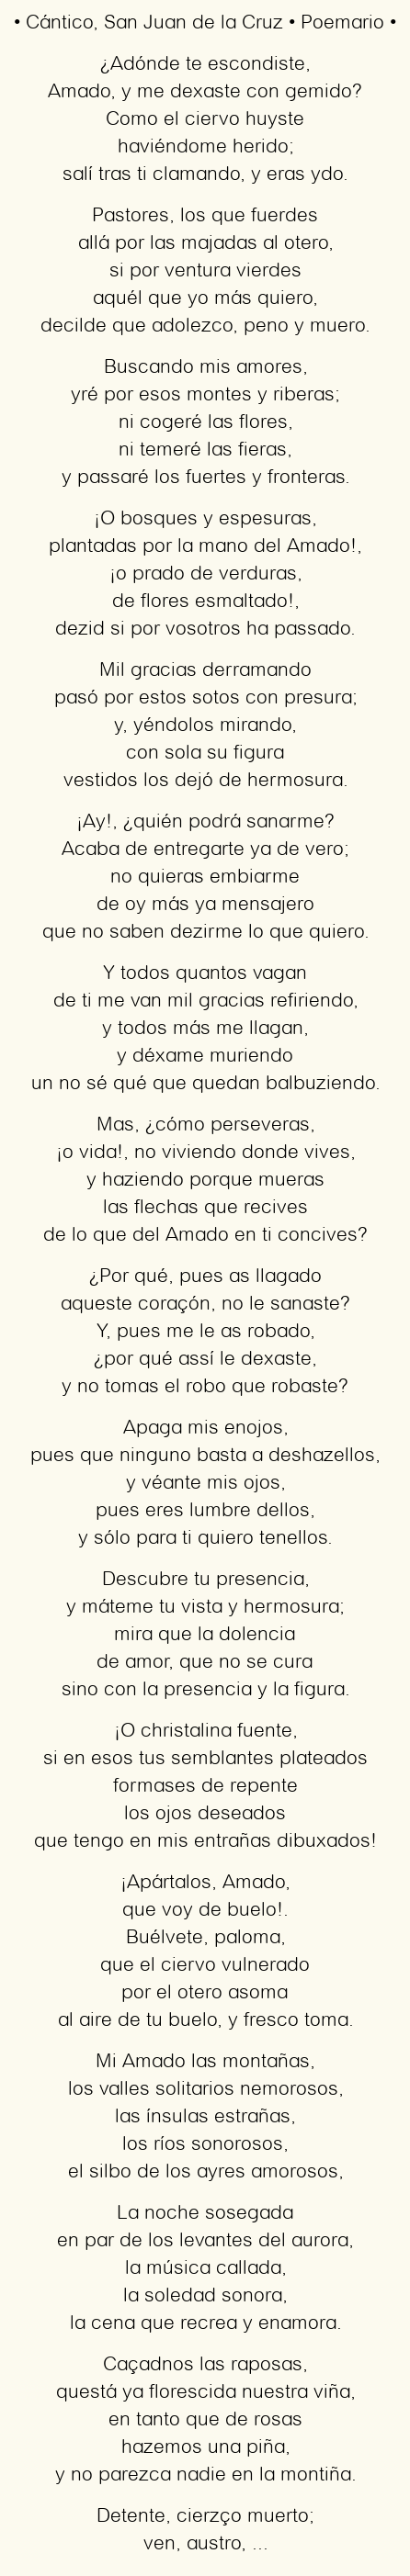 Imagen con el poema Cántico, por San Juan de la Cruz